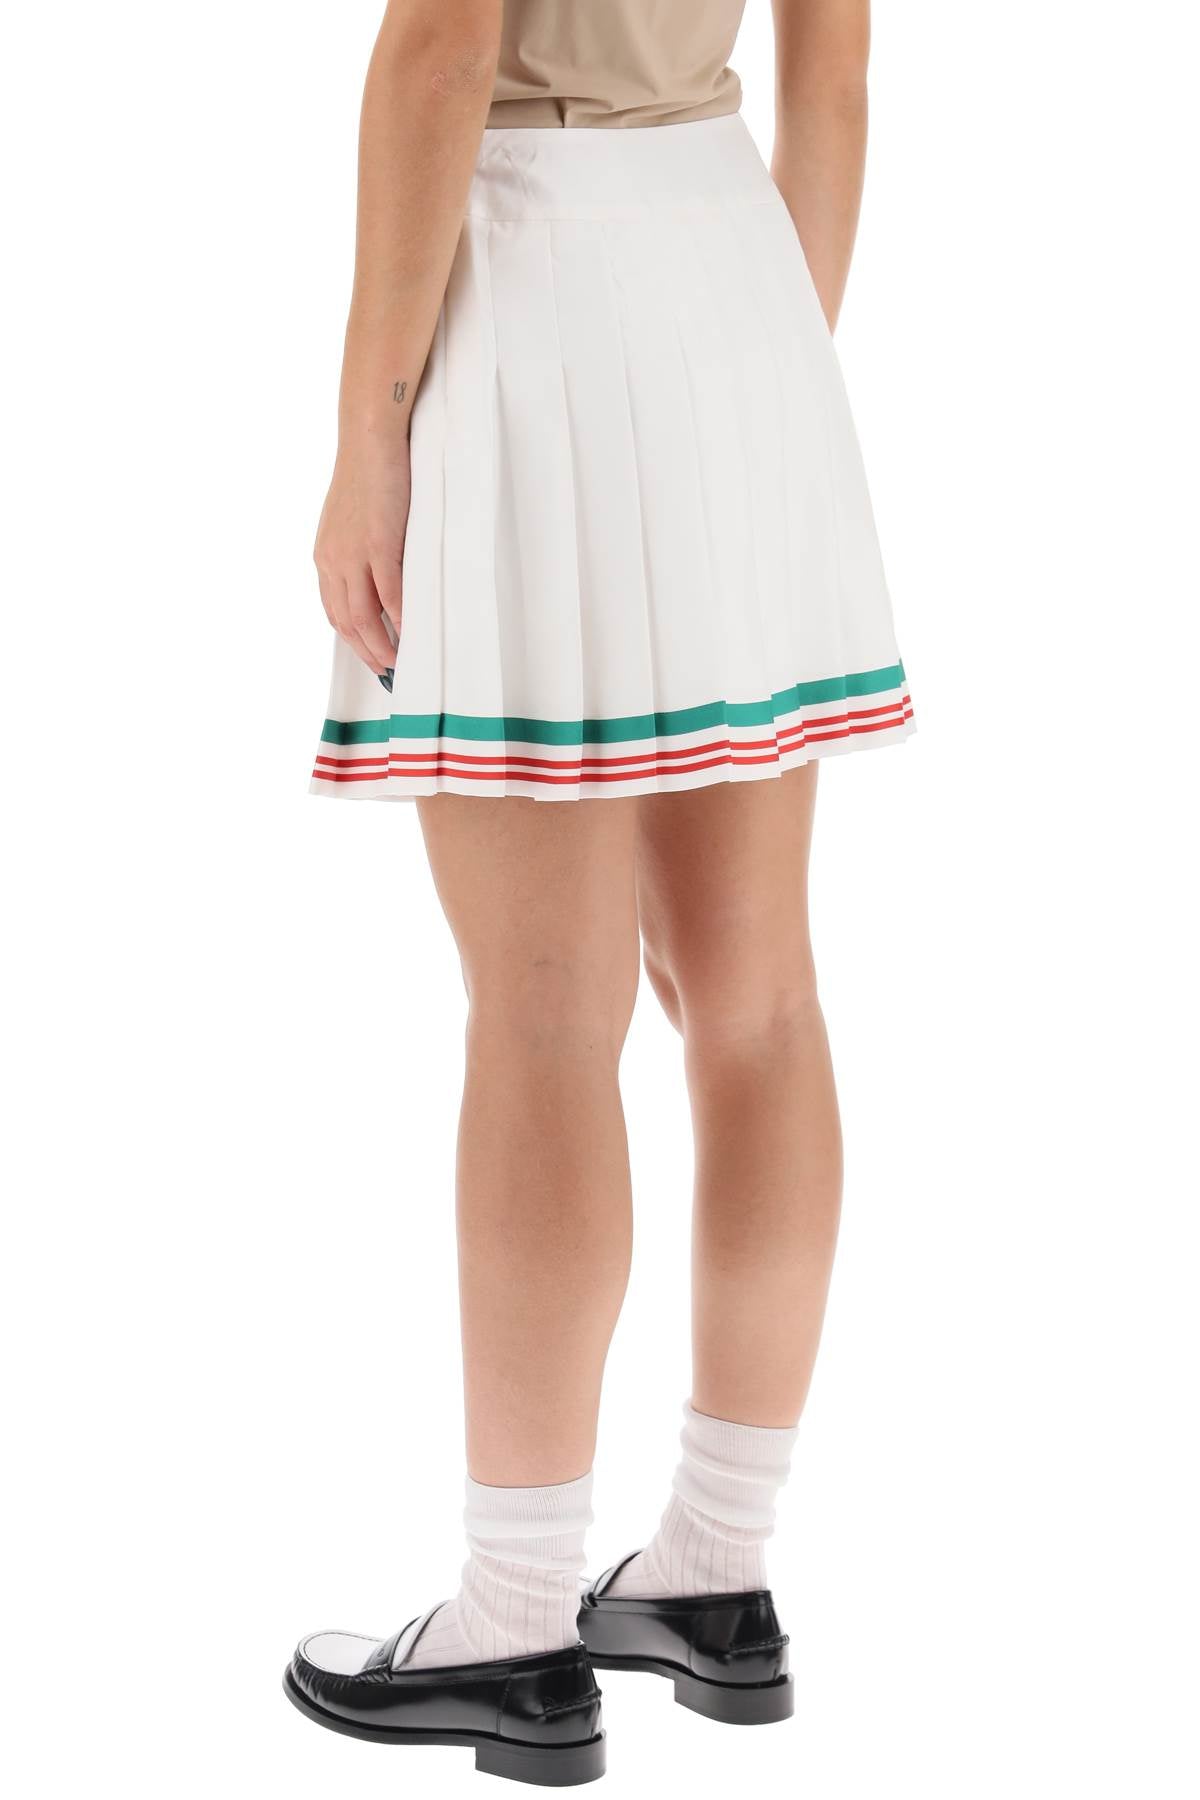 白色網球迷你裙-絲綢褶皺與條紋飾邊